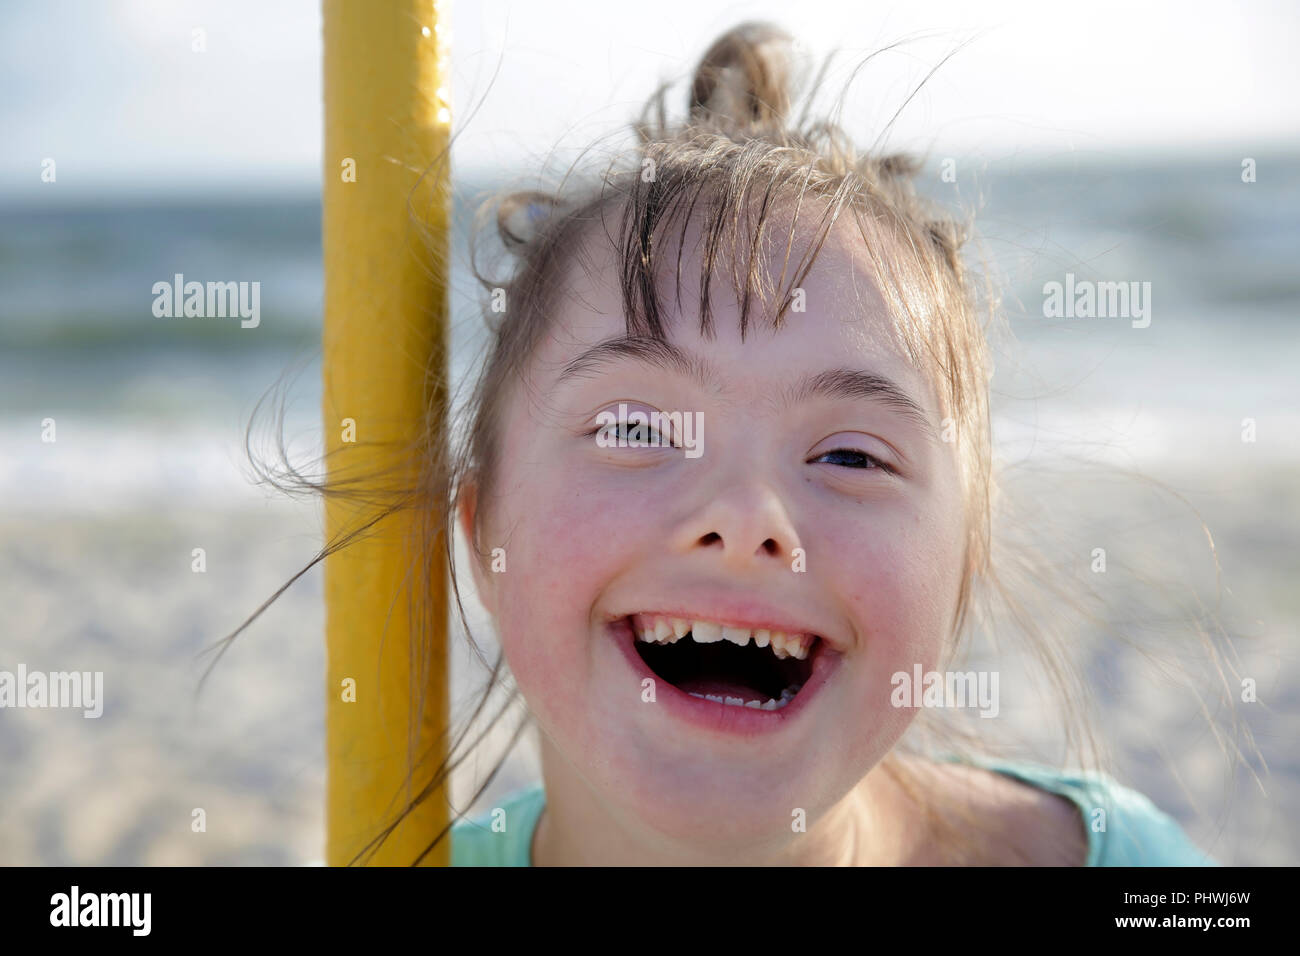 Portrait de syndrome de Down girl smiling Banque D'Images